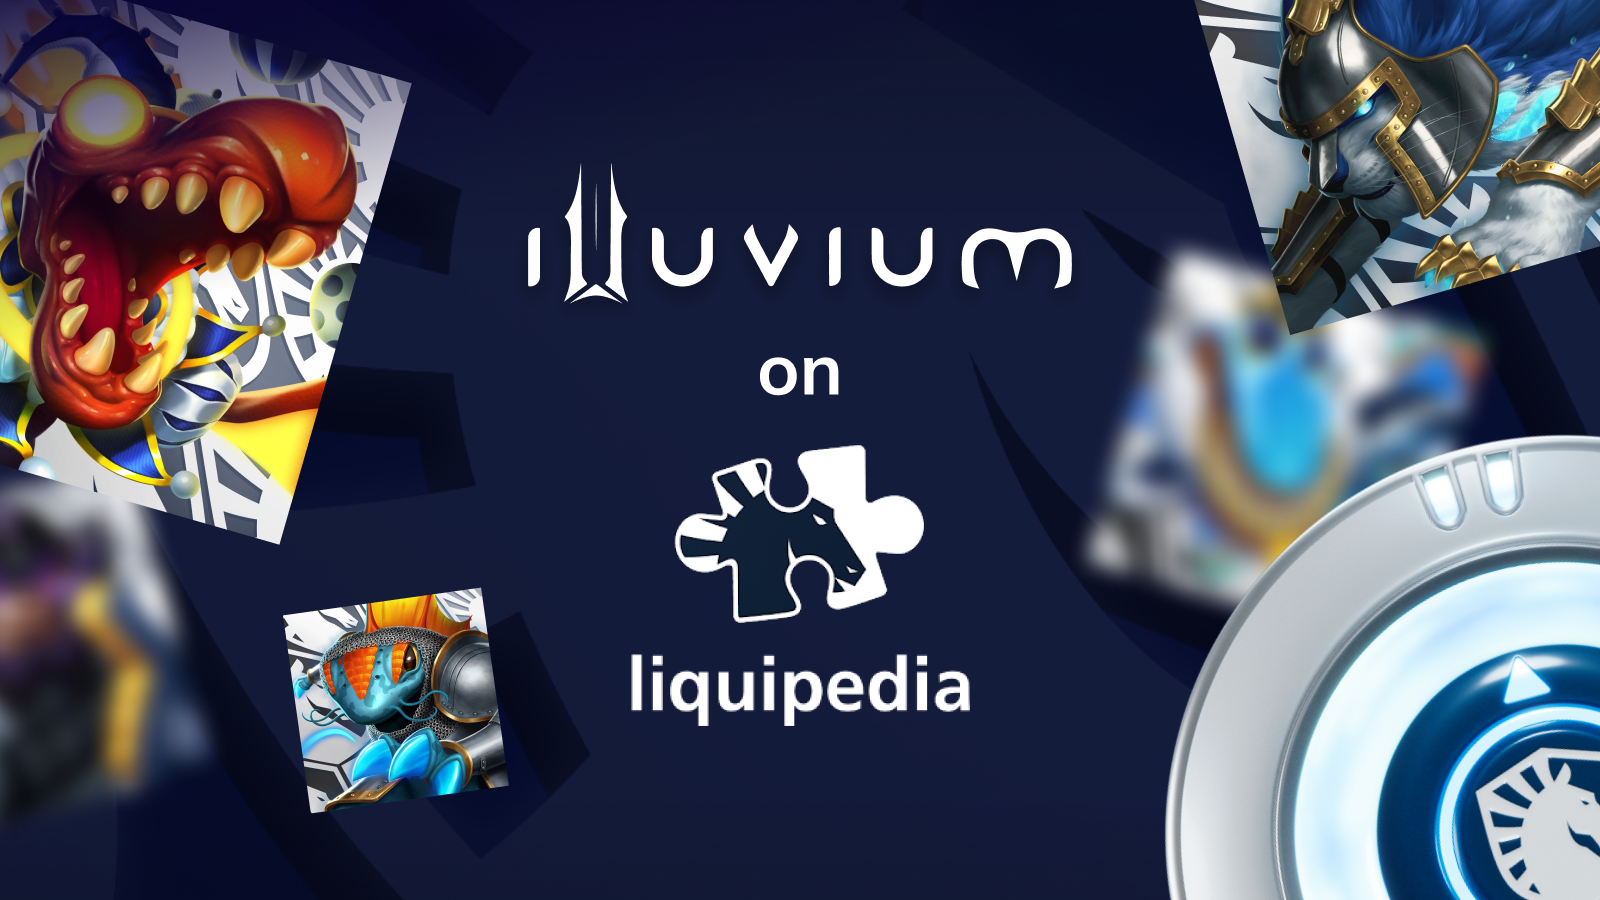 Illuvium Zero - Download Guide – Illuvium